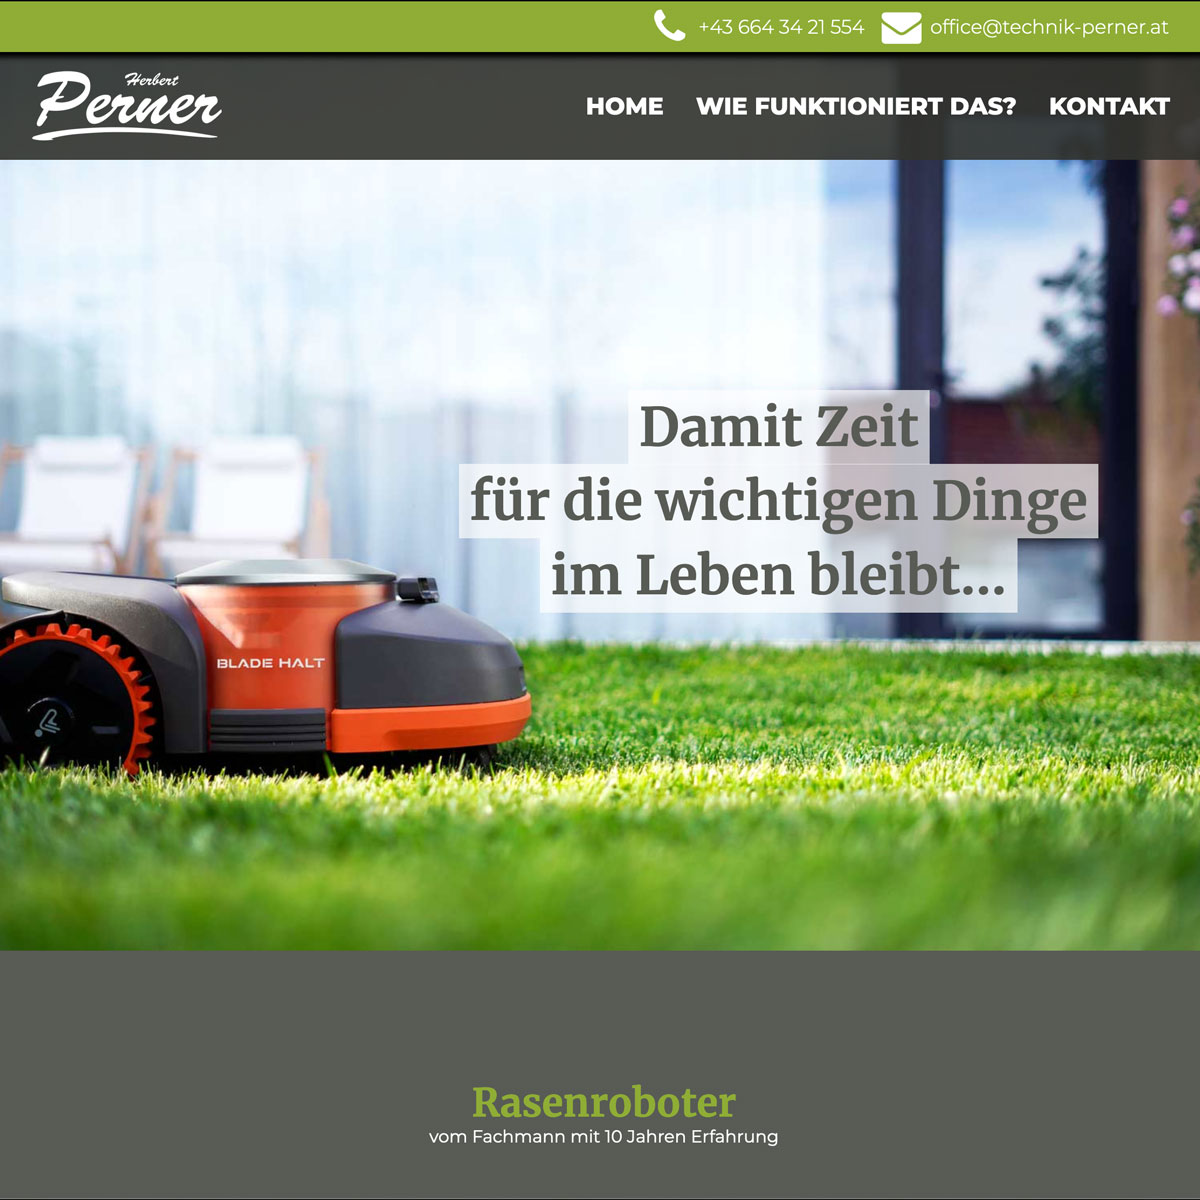 Website Herbert Perner – Rasenroboter, Mähroboter in der Steiermark